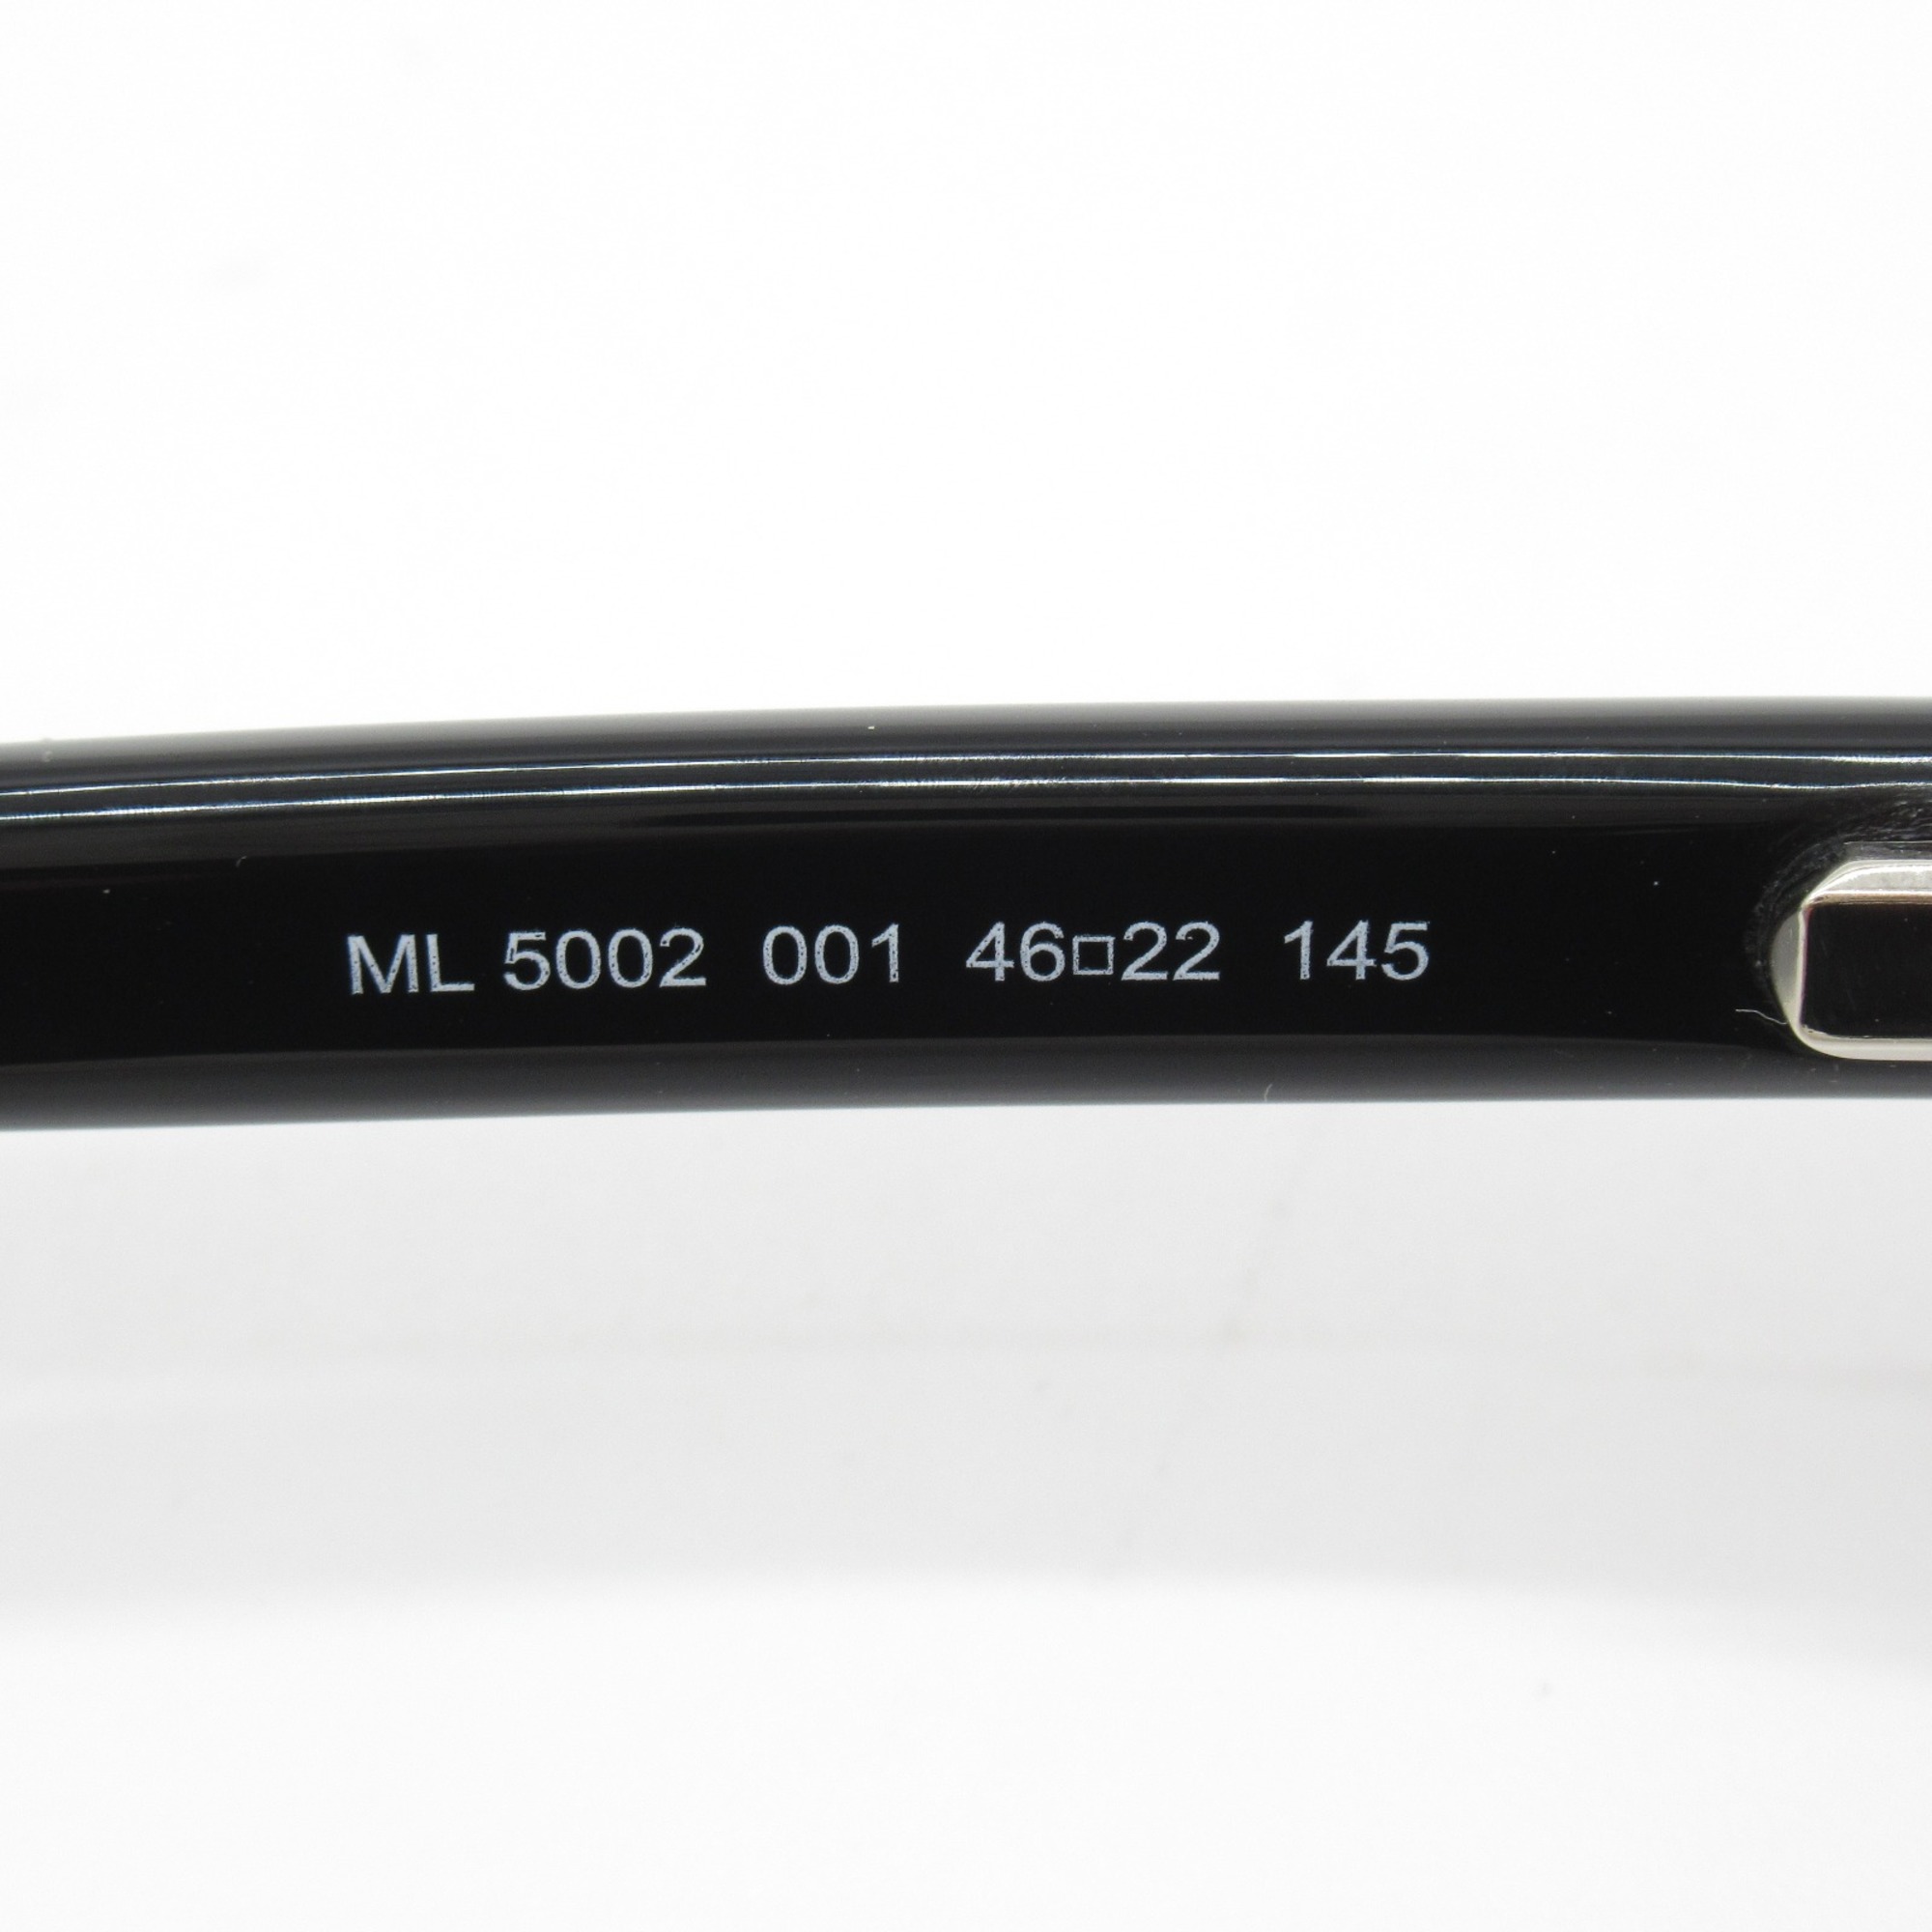 MONCLER Date Glasses Glasses Frame Black Plastic 5002 001(46)